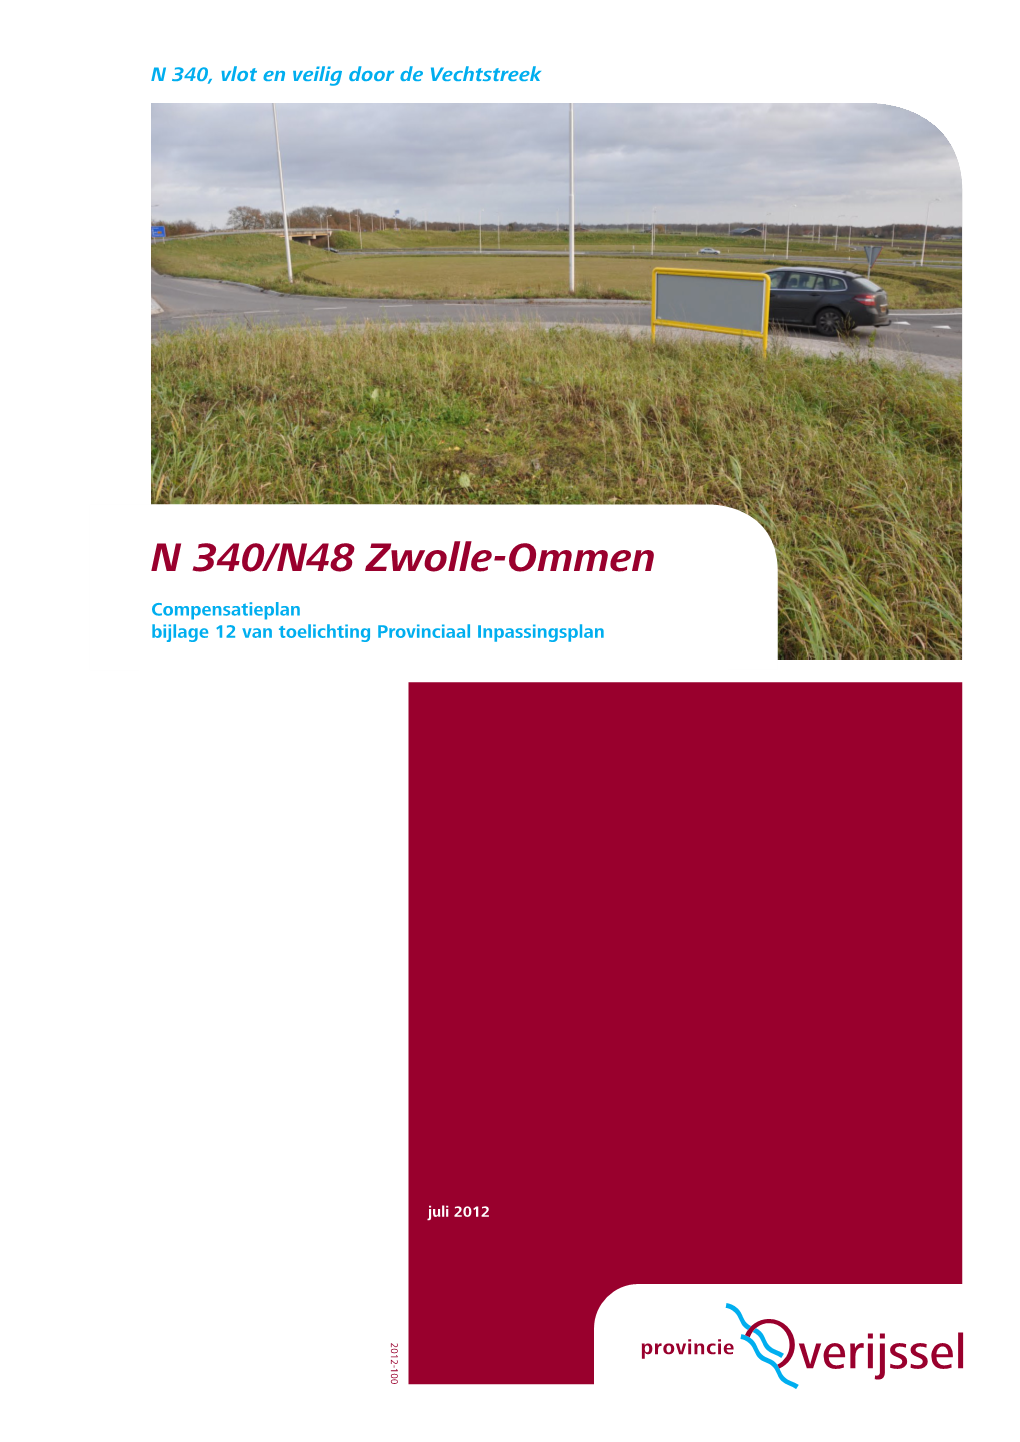 N 340/N48 Zwolle-Ommen